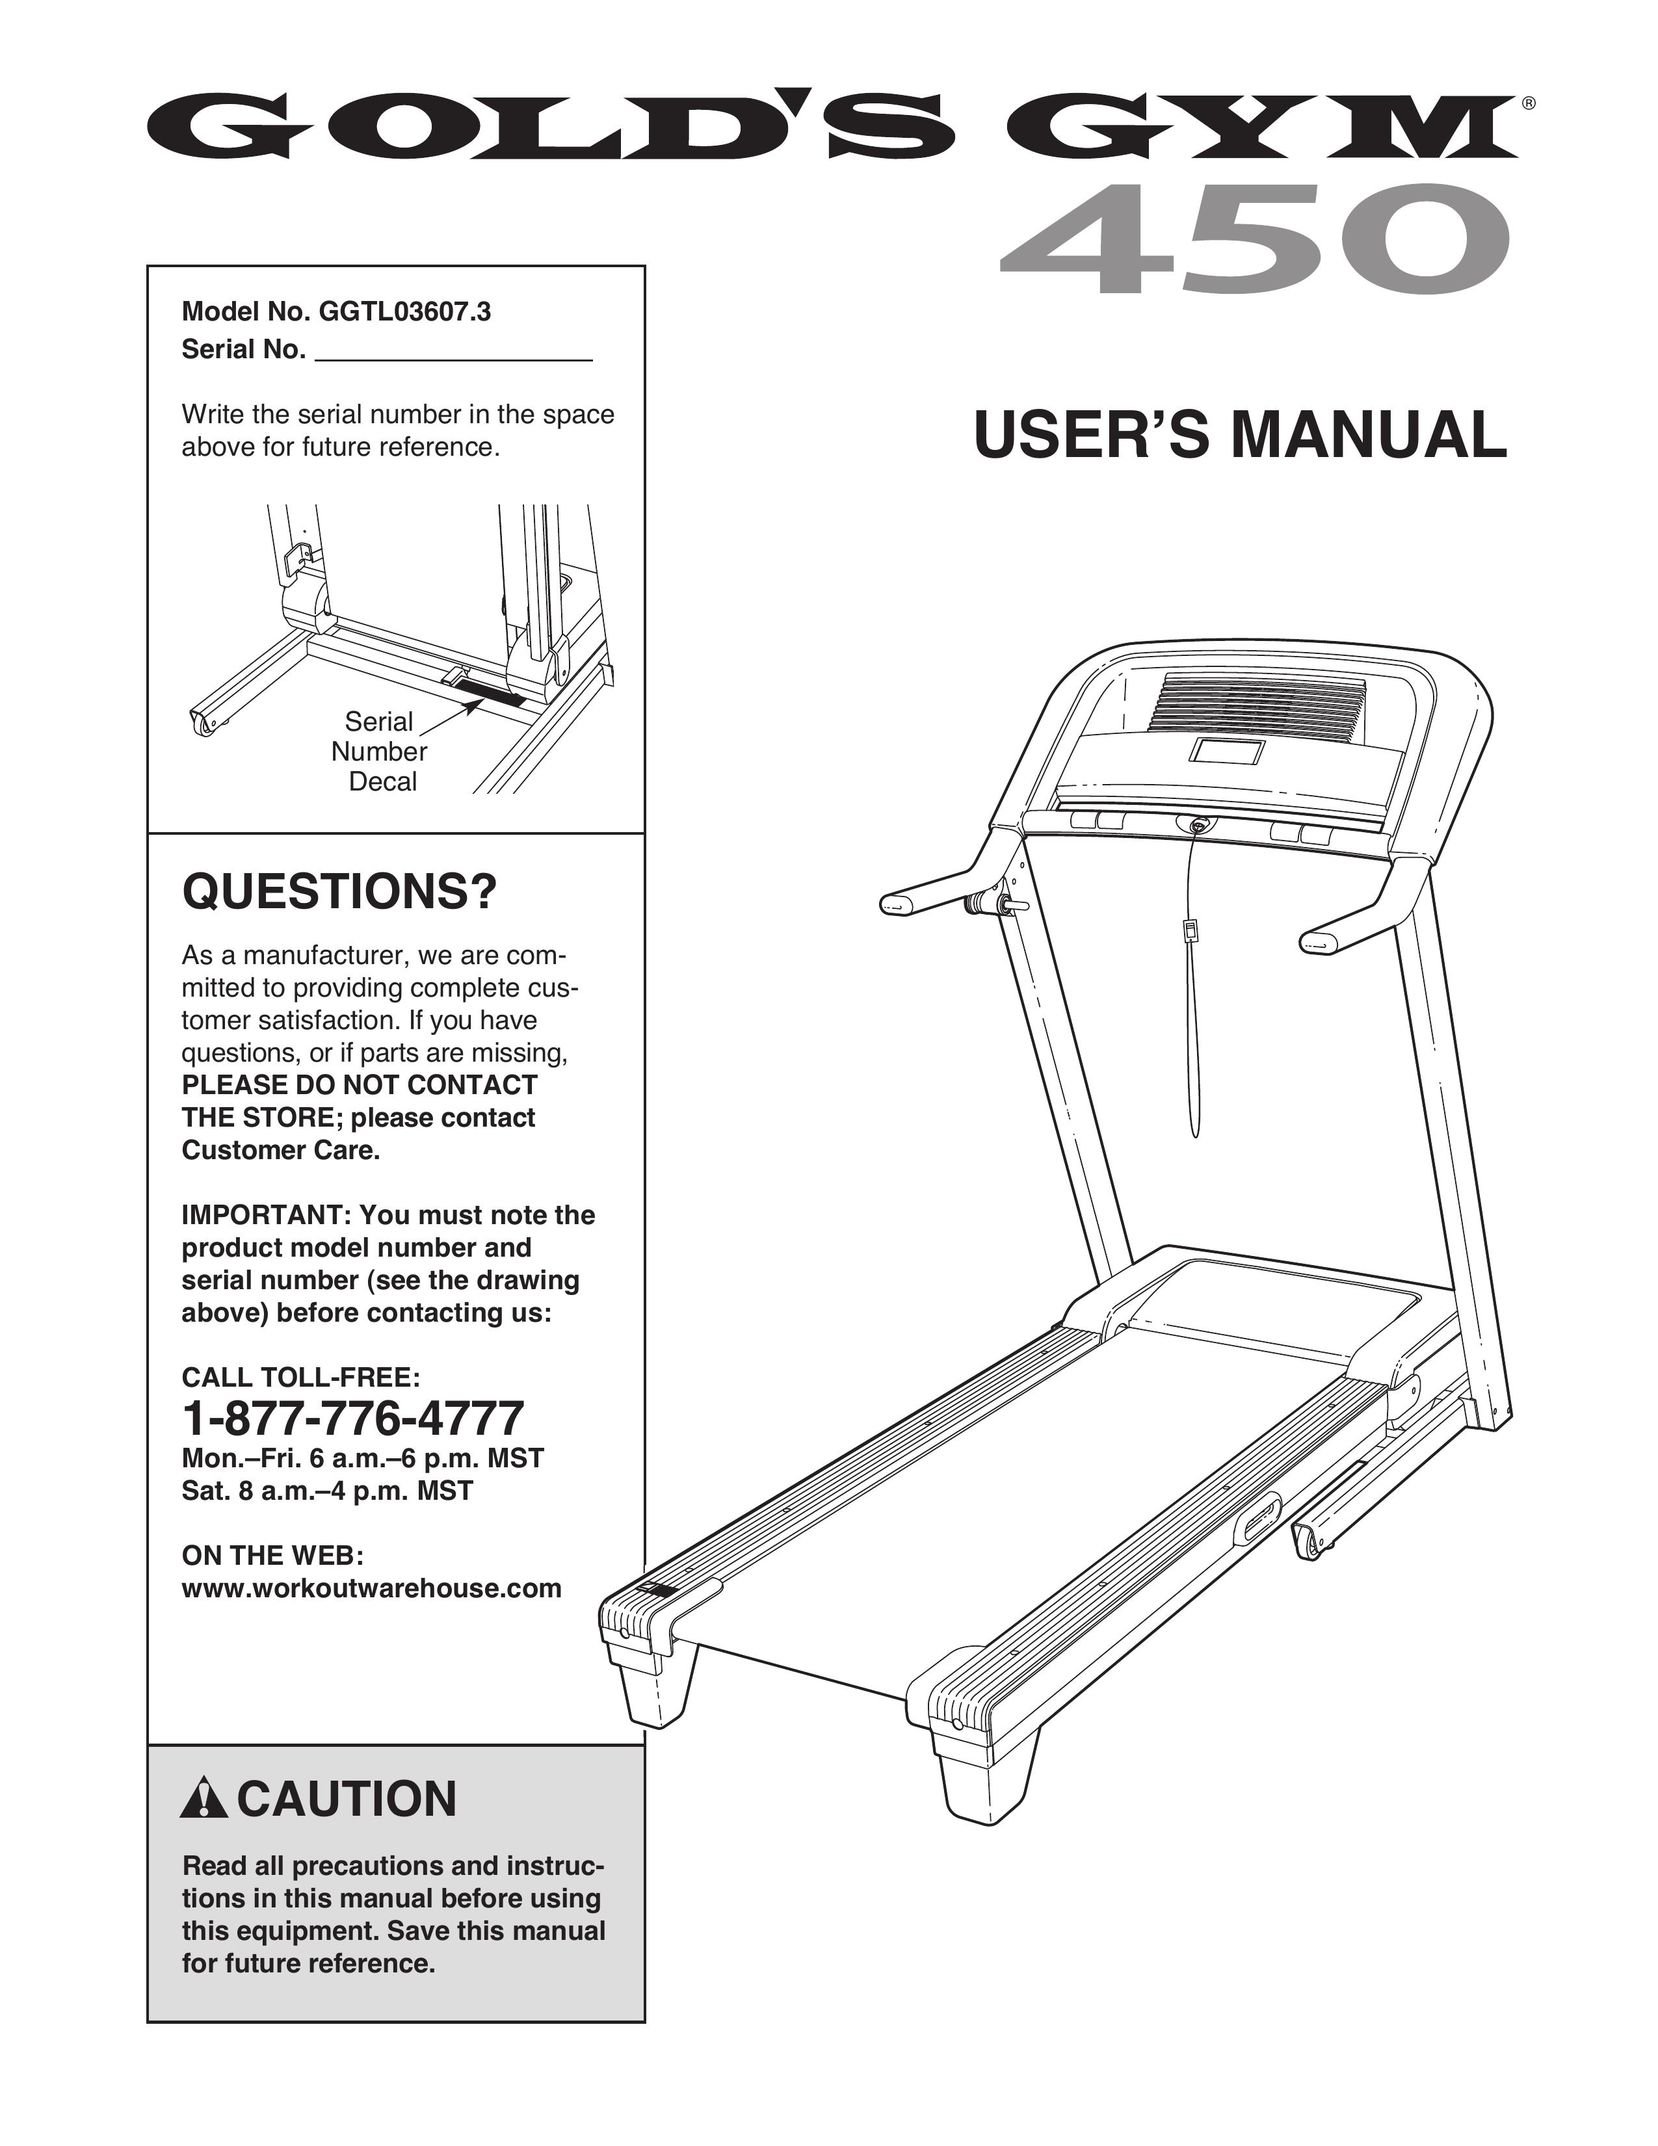 Gold's Gym GGTL03607.3 Treadmill User Manual